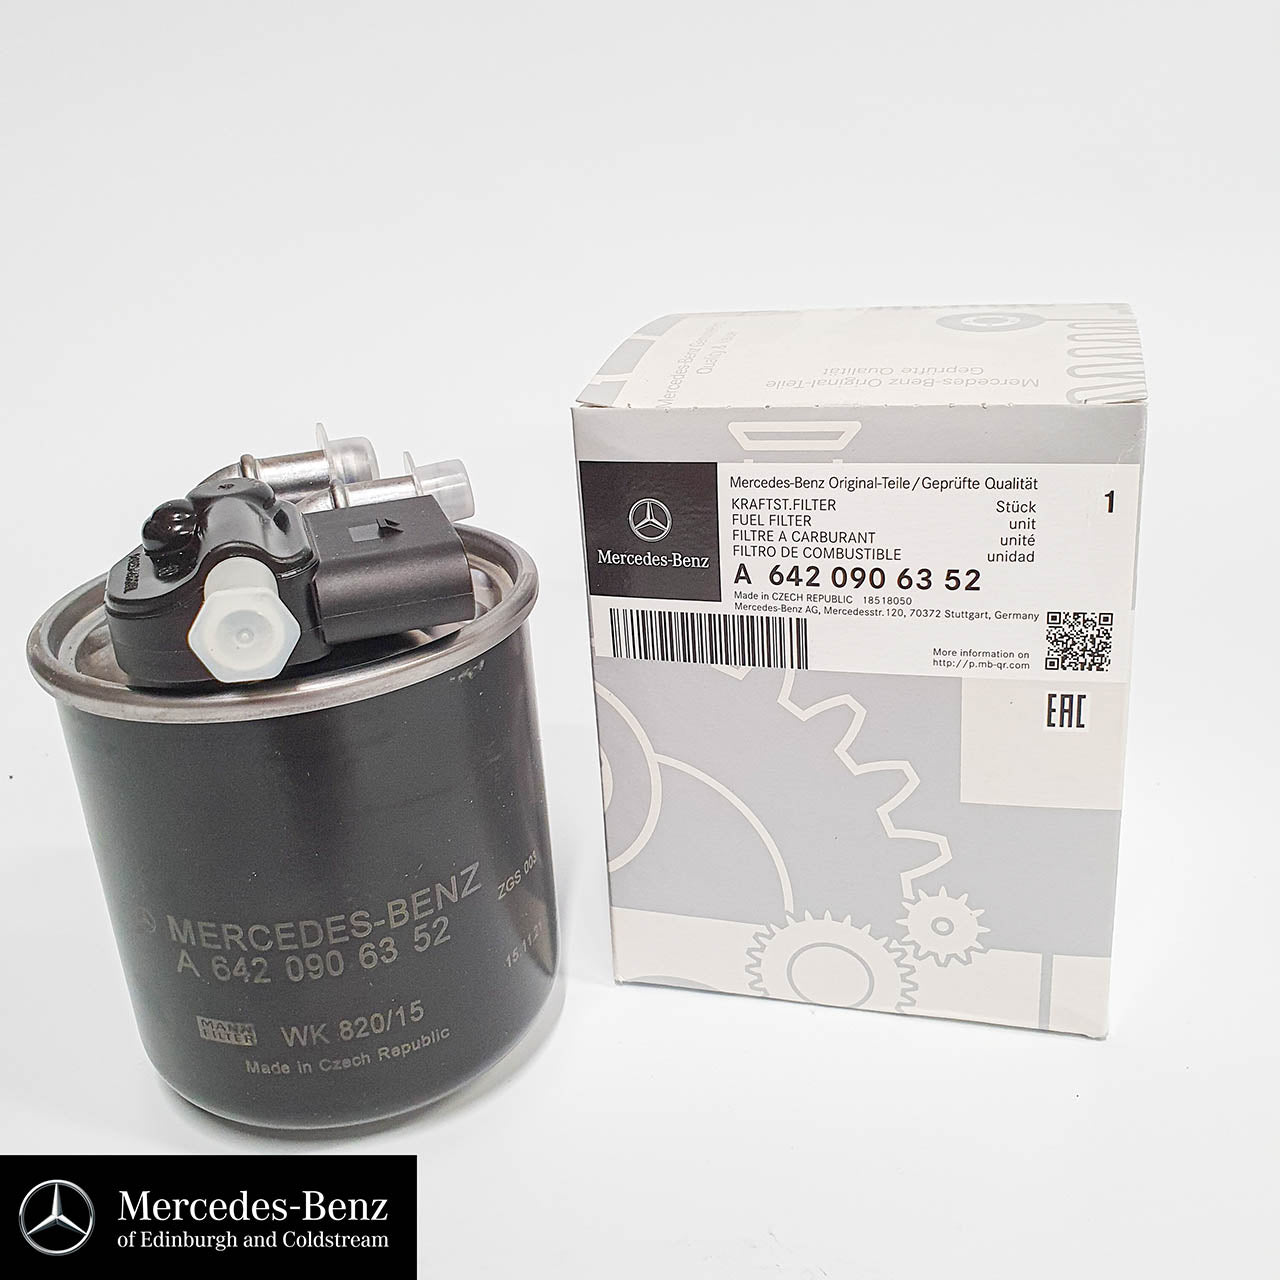 Genuine Mercedes-Benz fuel filter for OM651 diesel engines